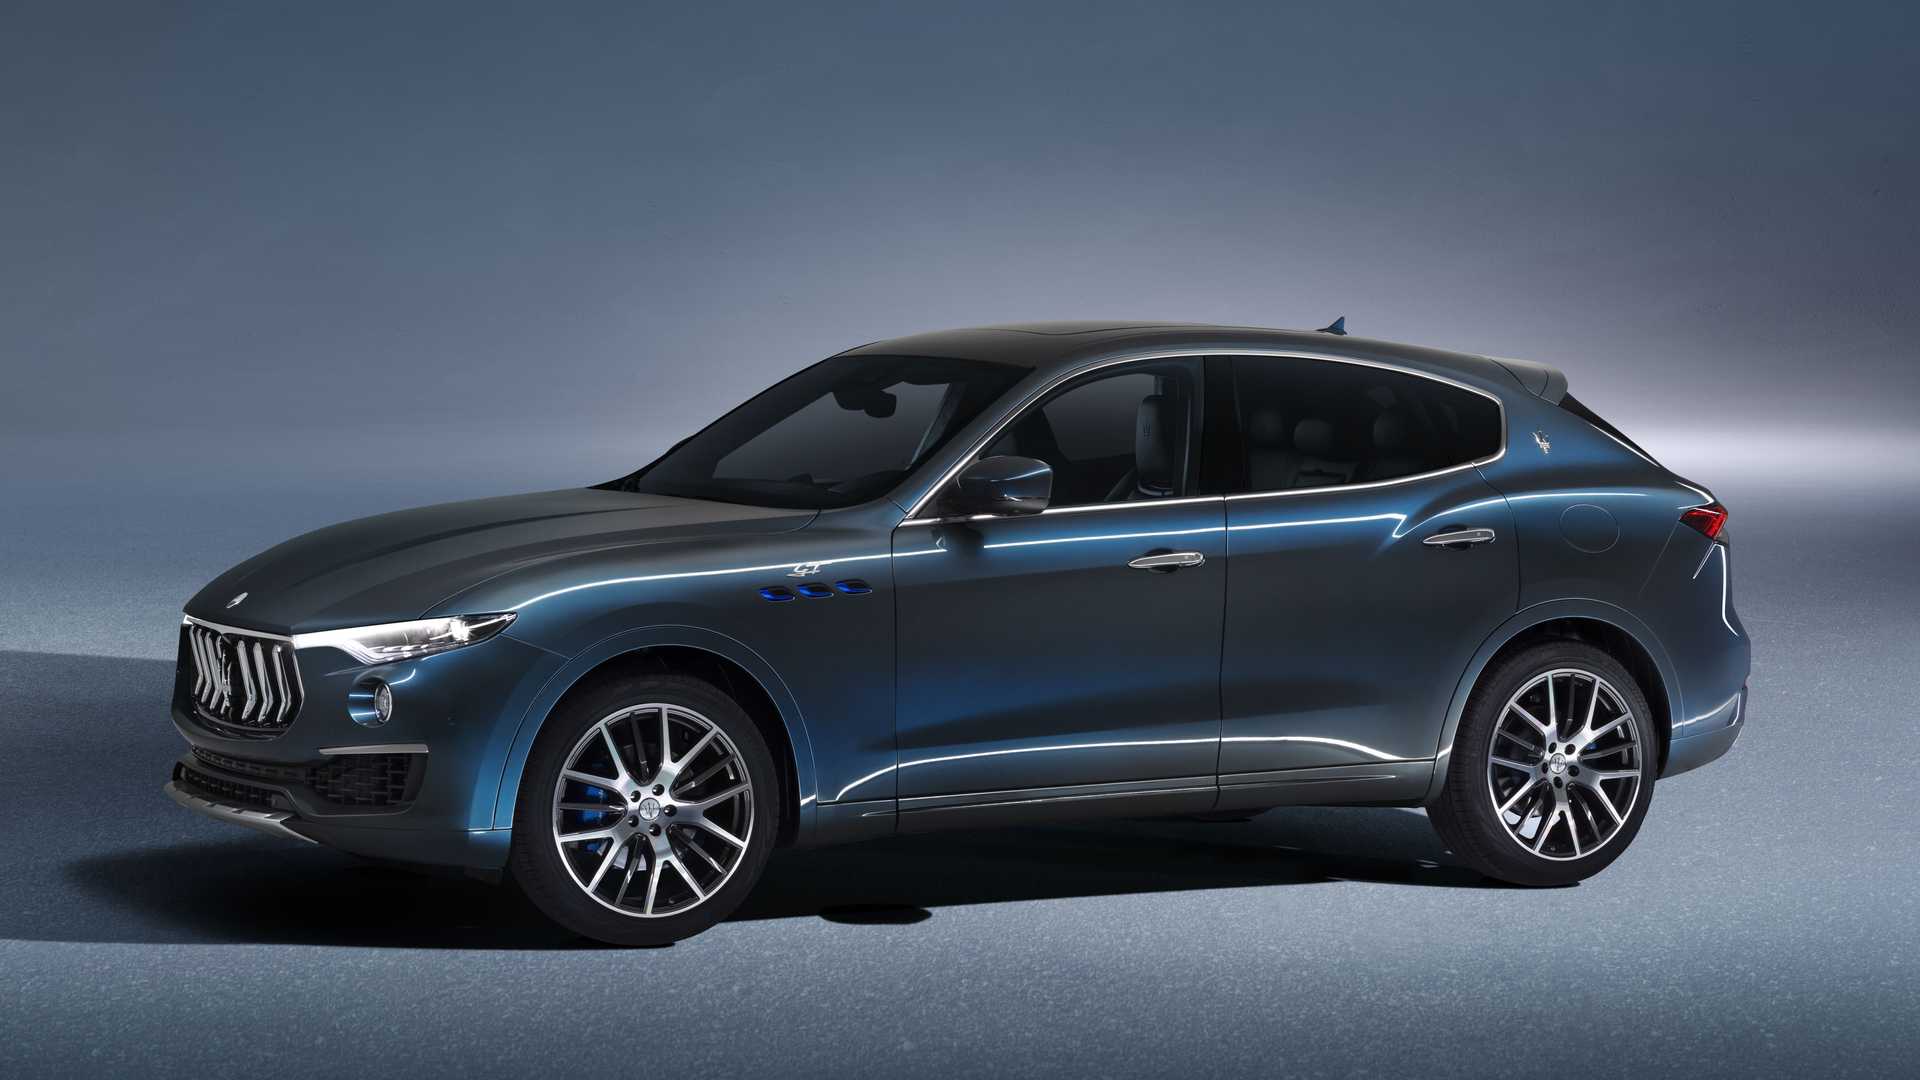 نمای سه چهارم خودرو شاسی بلند مازراتی لوانته هیبرید / Maserati Levante Hybrid SUV آبی رنگ